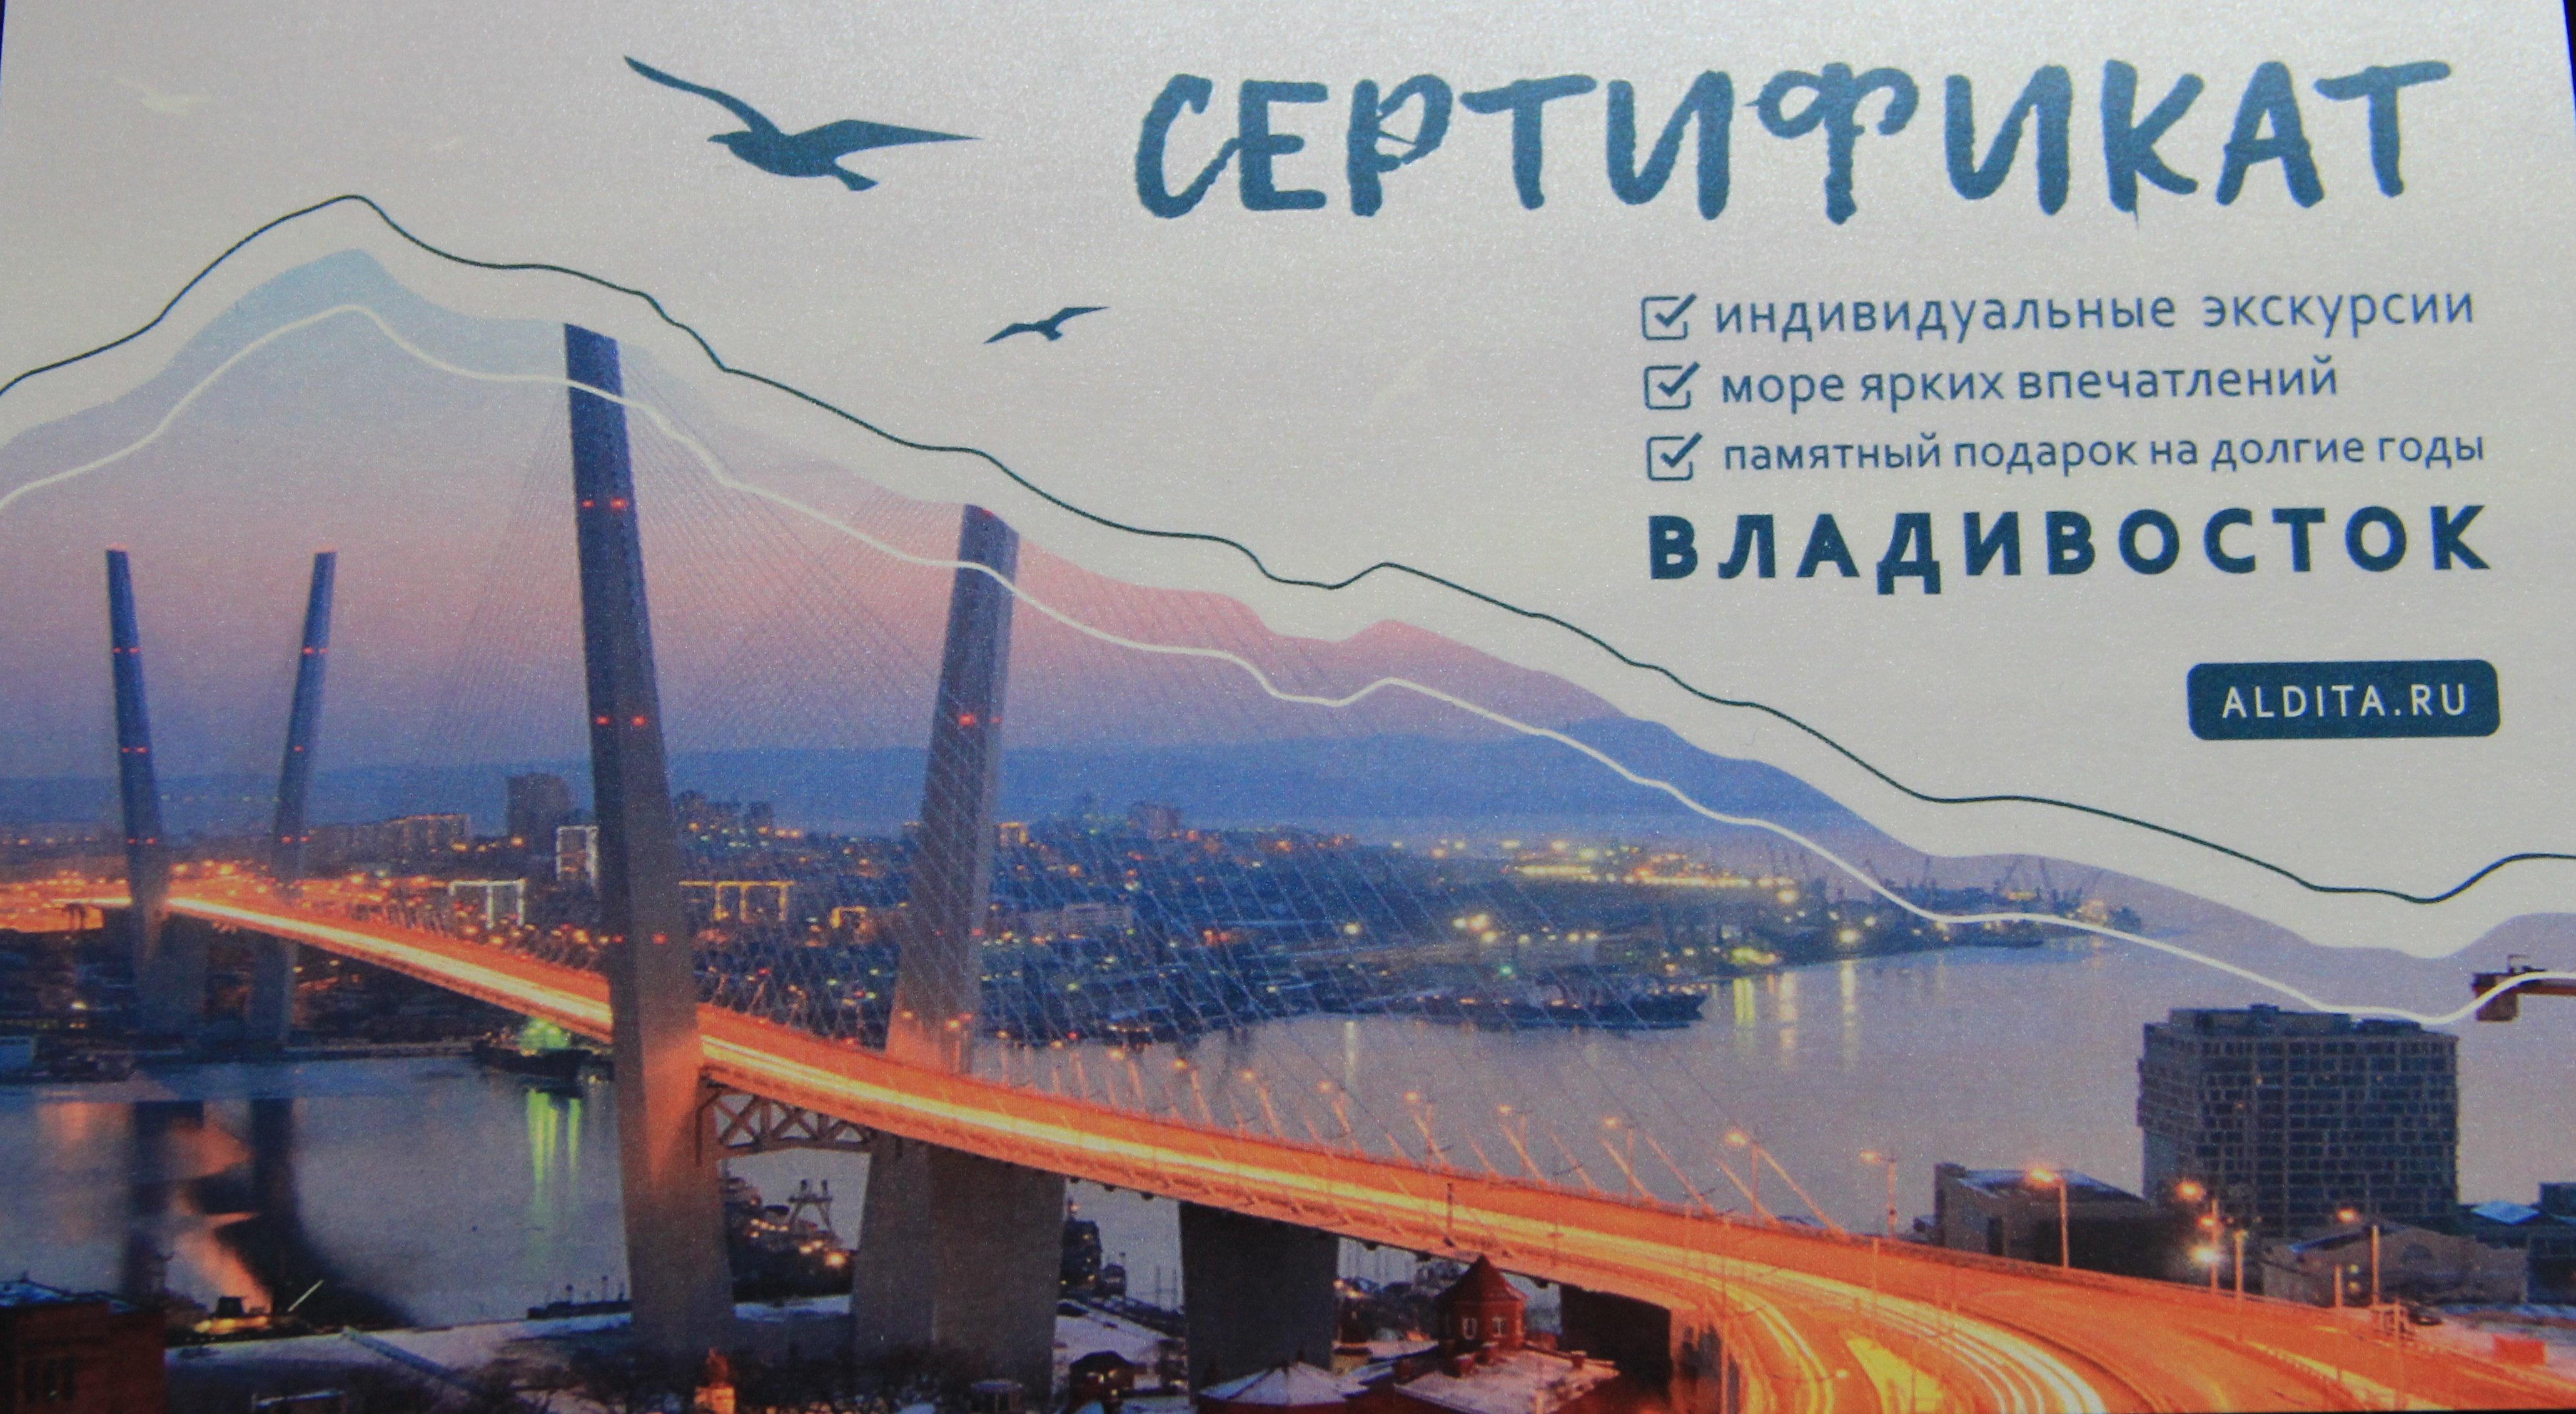 Подарочный сертификат от компании Алдита Владивосток